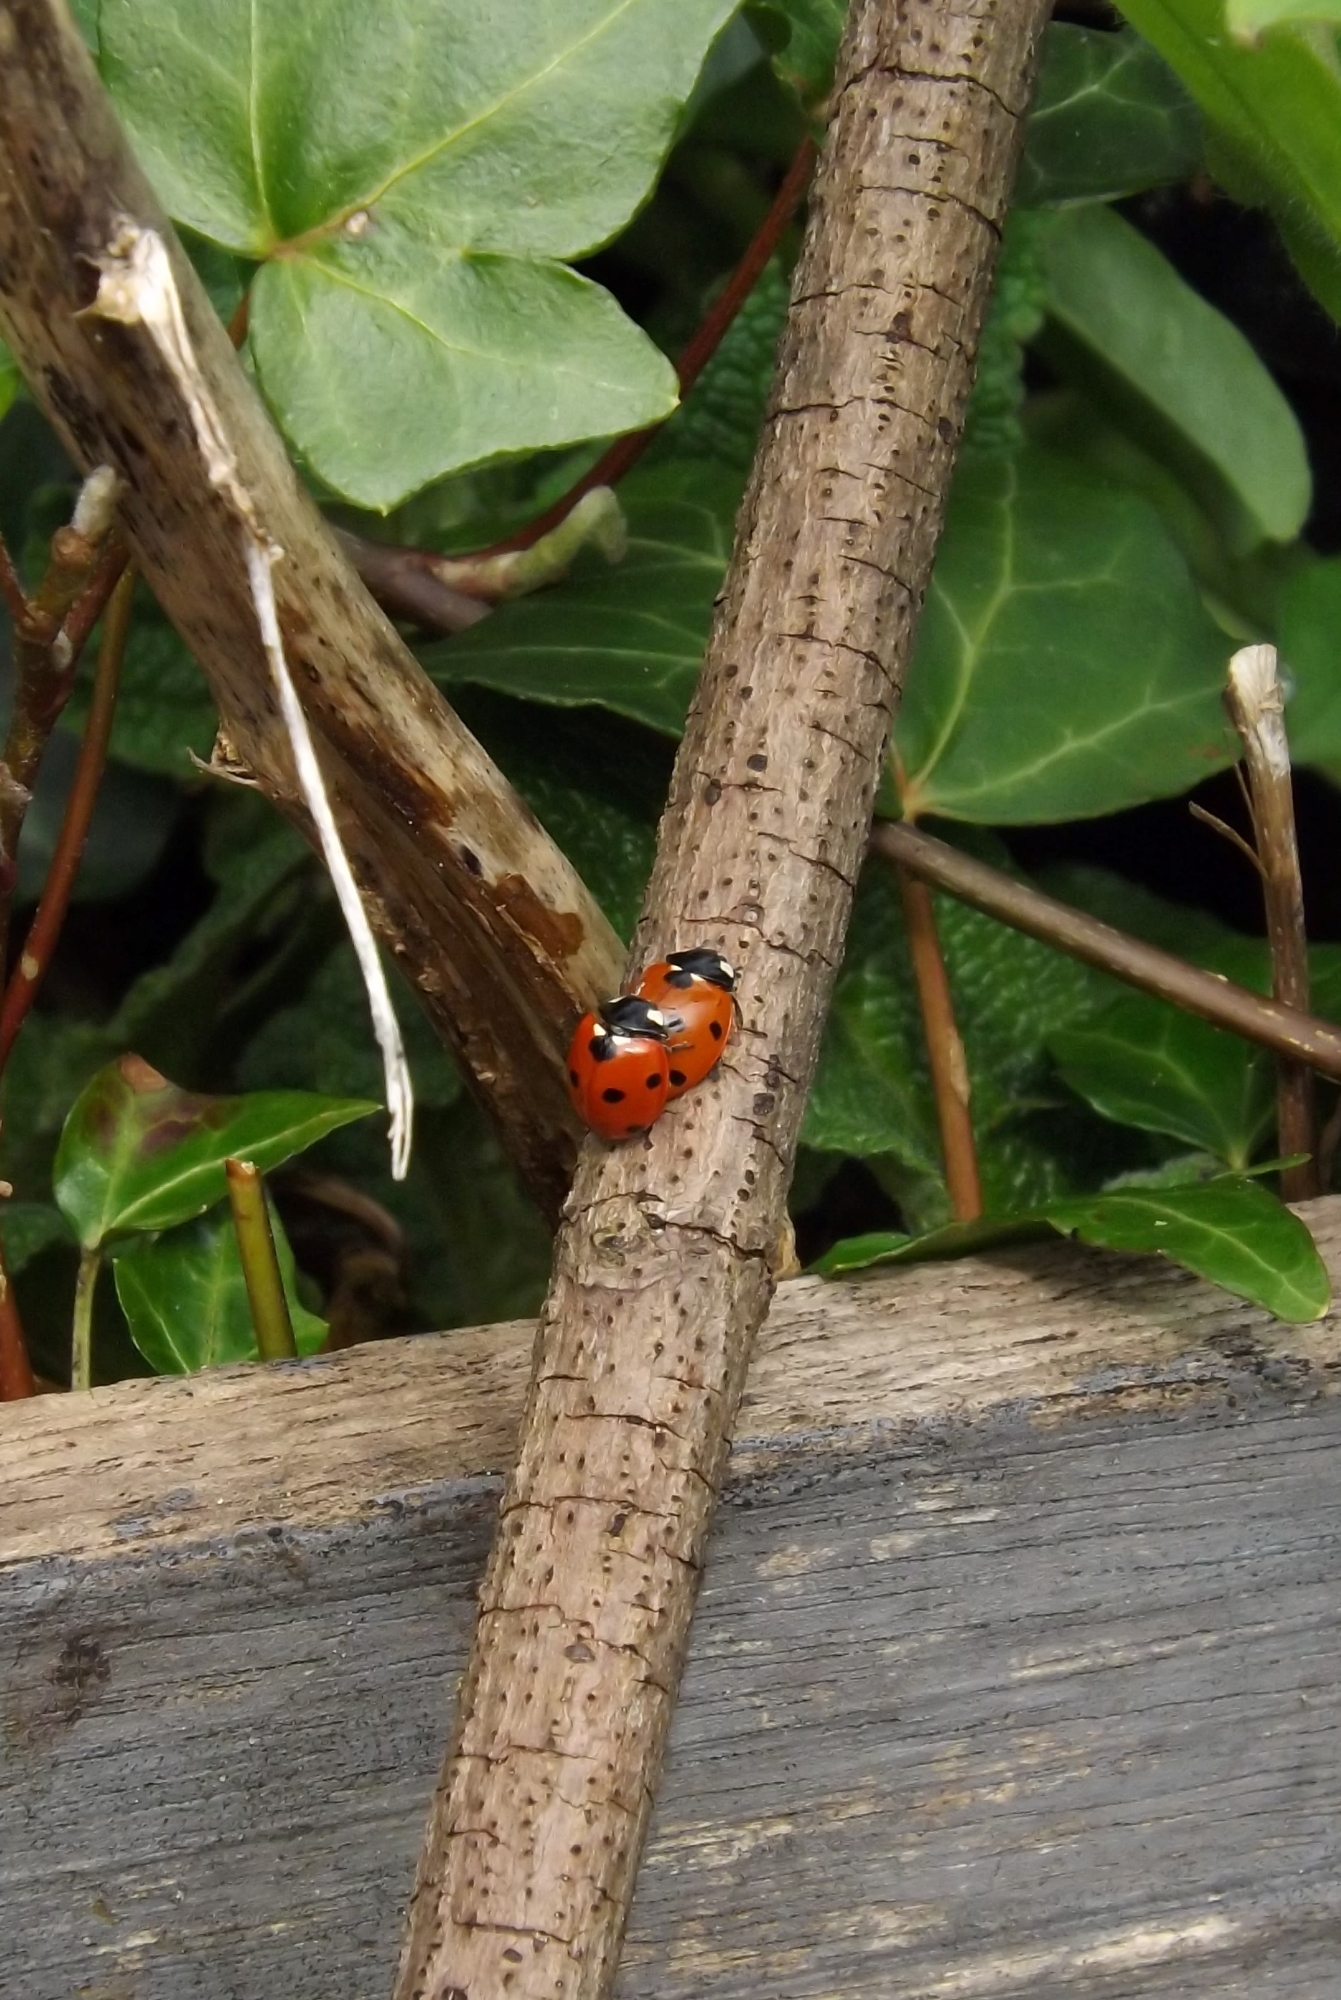 C. septempunctata (seven-spot ladybird) by the herb garden